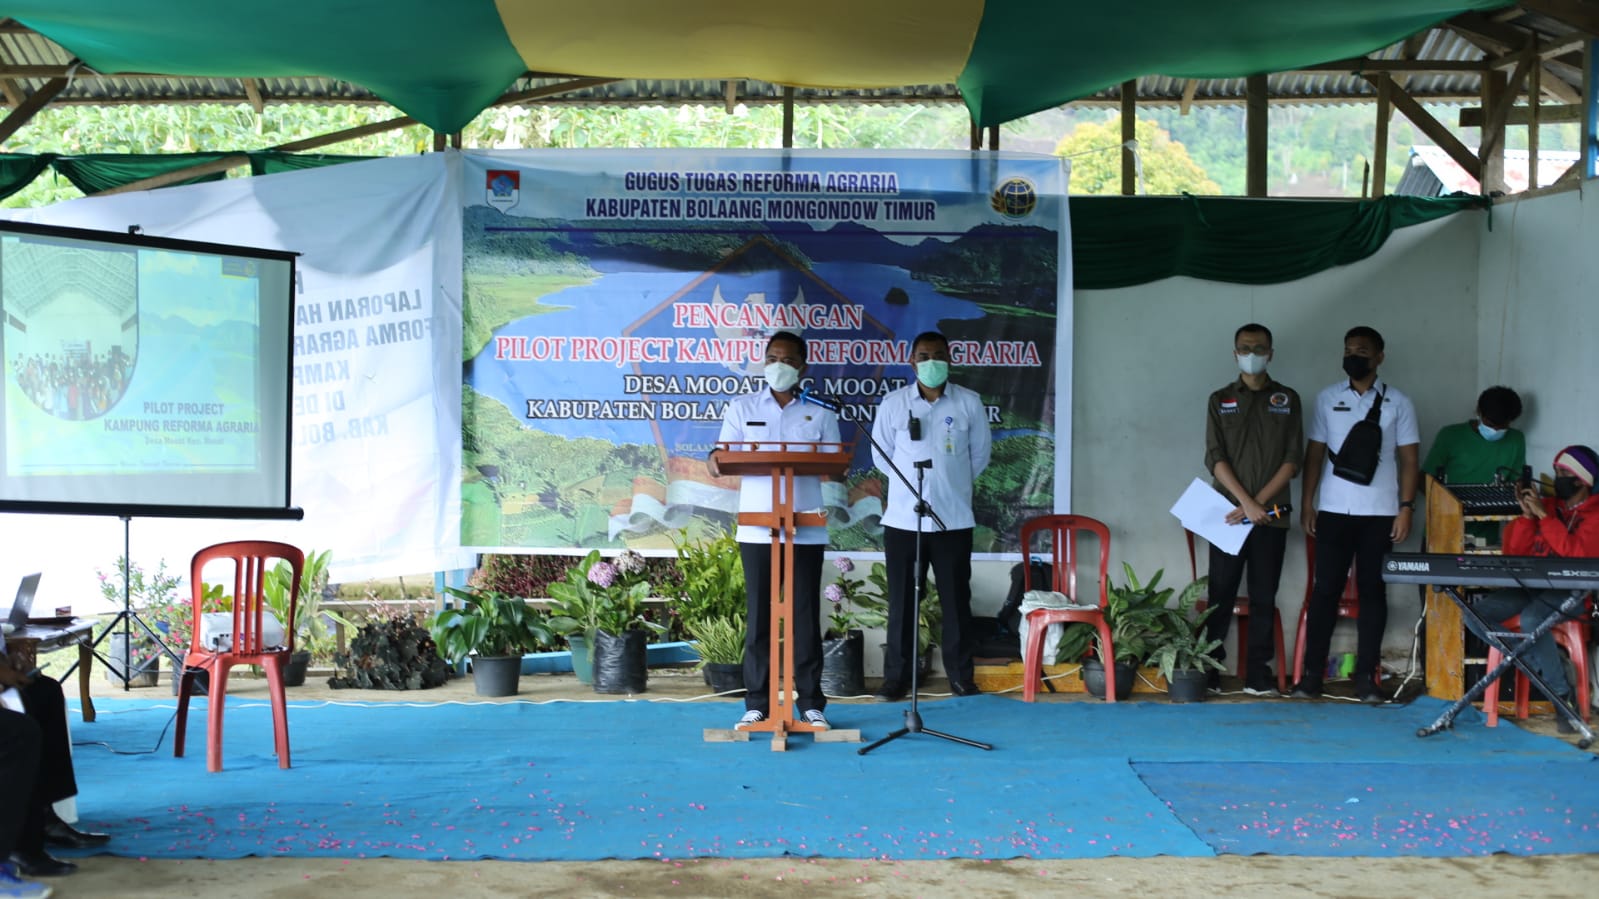 Bupati Sam Sachrul Mamonto Buka Kegiatan Pencanangan Pilot Project Kampung Reforma Agraria